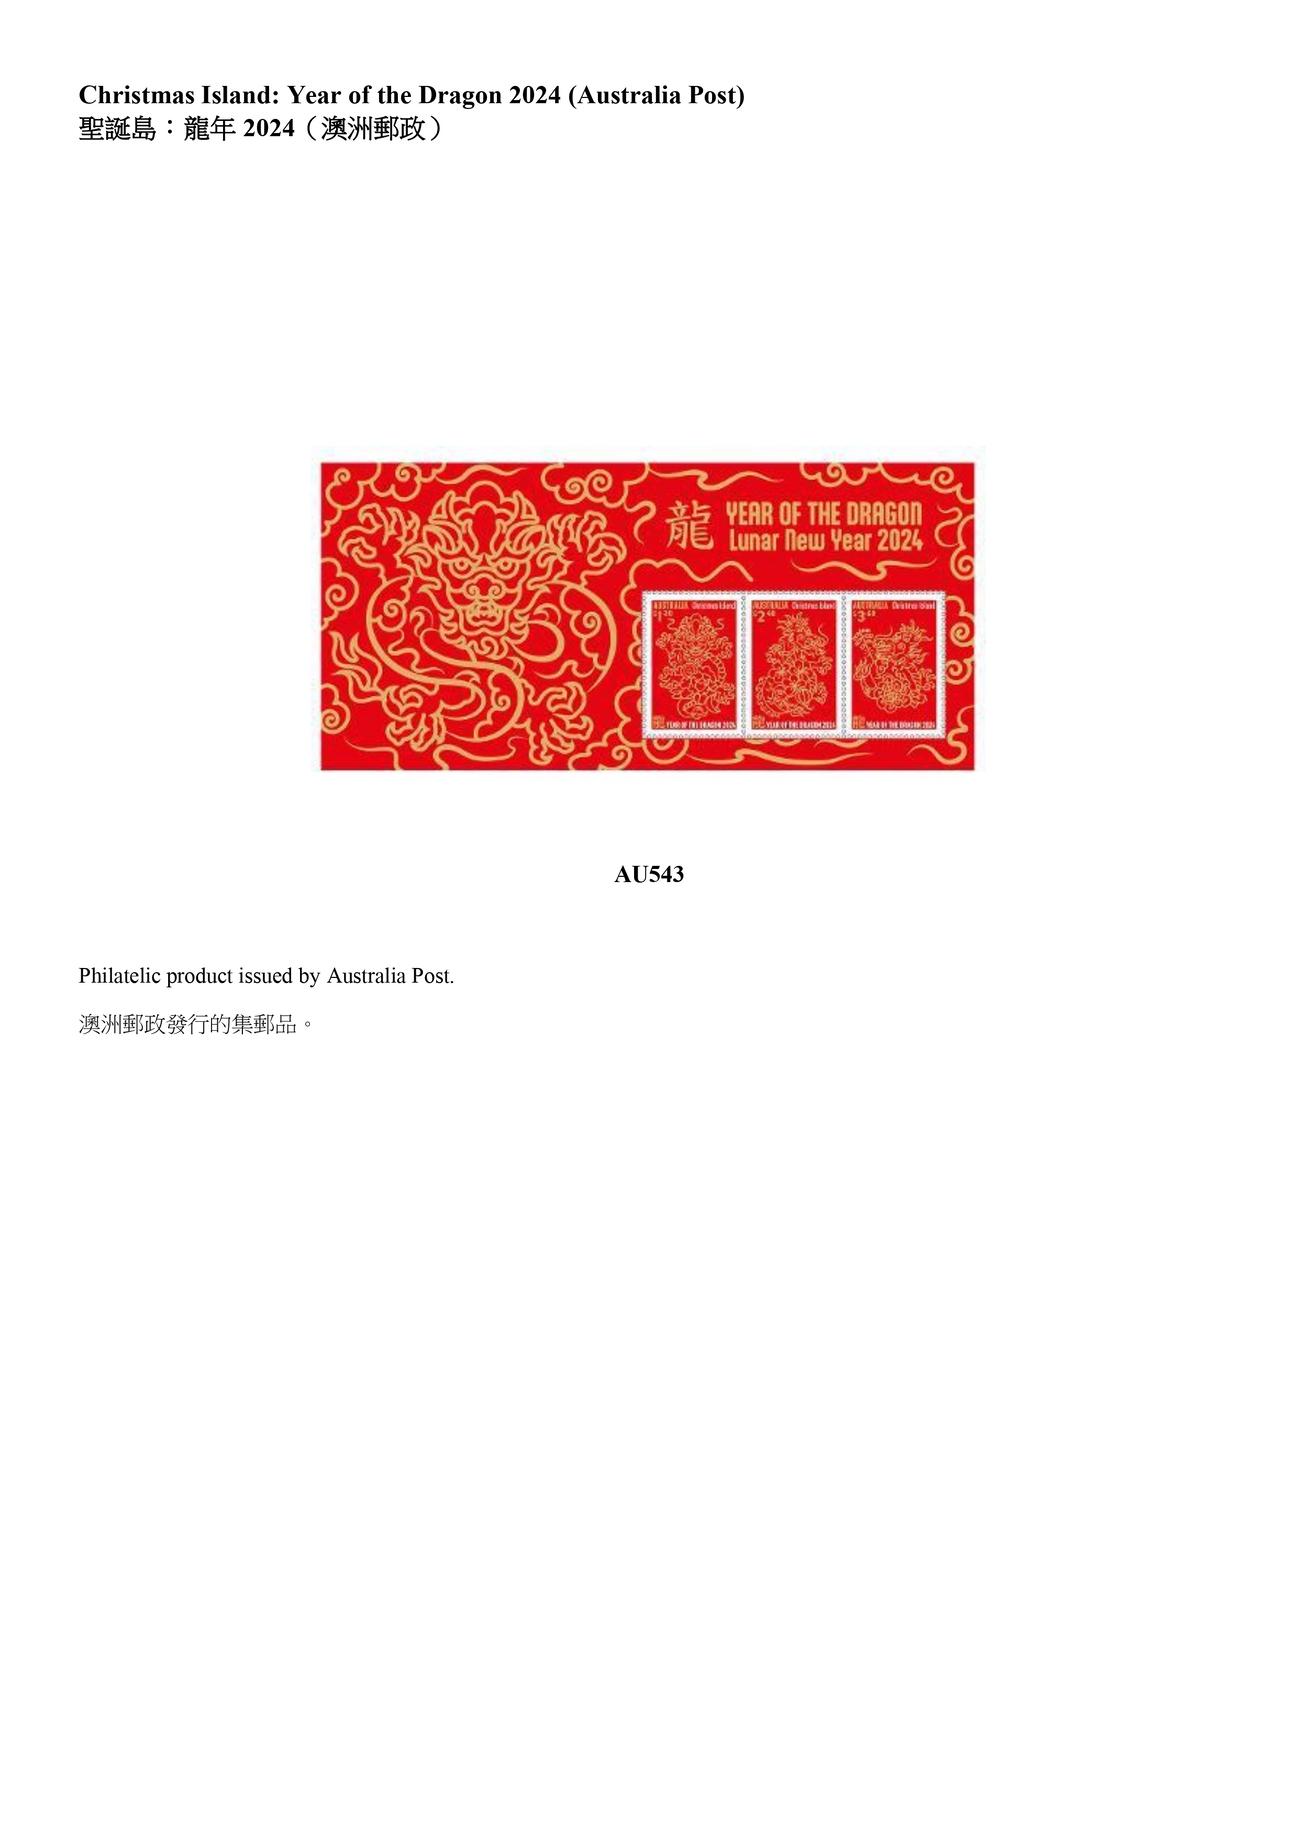 香港邮政今日（四月二十九日）公布，由中国邮政、澳门邮电及其他邮政机关，包括澳洲、马恩岛、列支敦士登、新西兰和联合国发行的精选集邮品，将于明日（四月三十日）起发售。图示澳洲邮政发行的集邮品。
